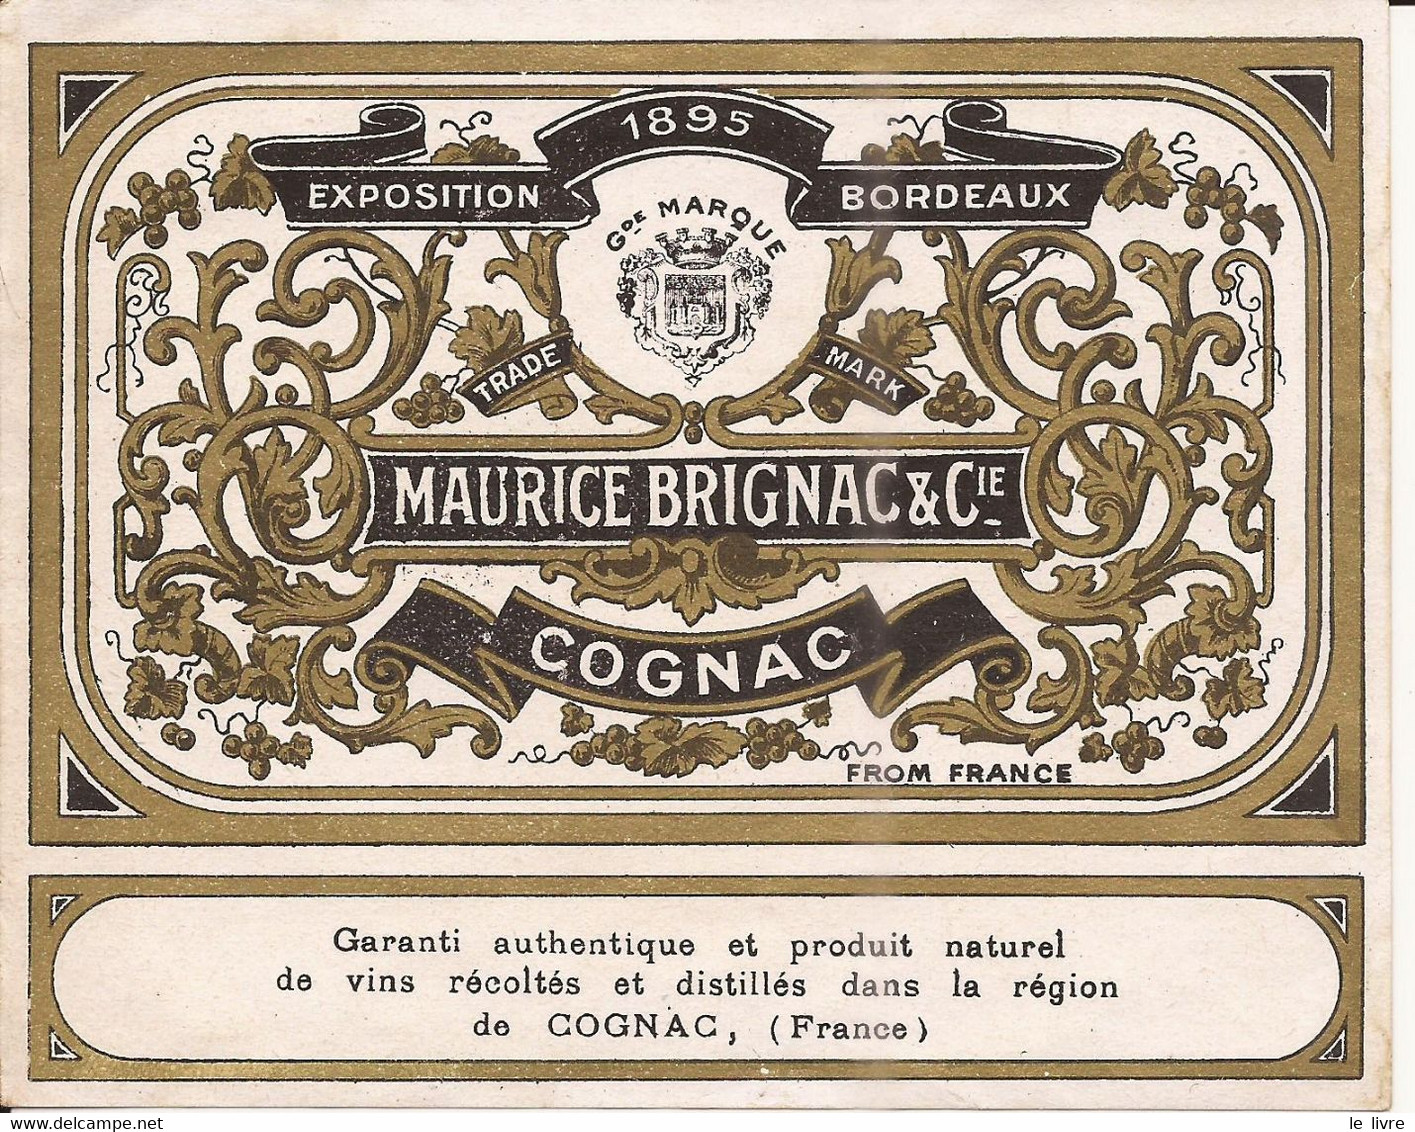 COGNAC ETIQUETTE ANCIENNE MAURICE BRIGNAC & Cie EXPOSITION BORDEAUX 1895